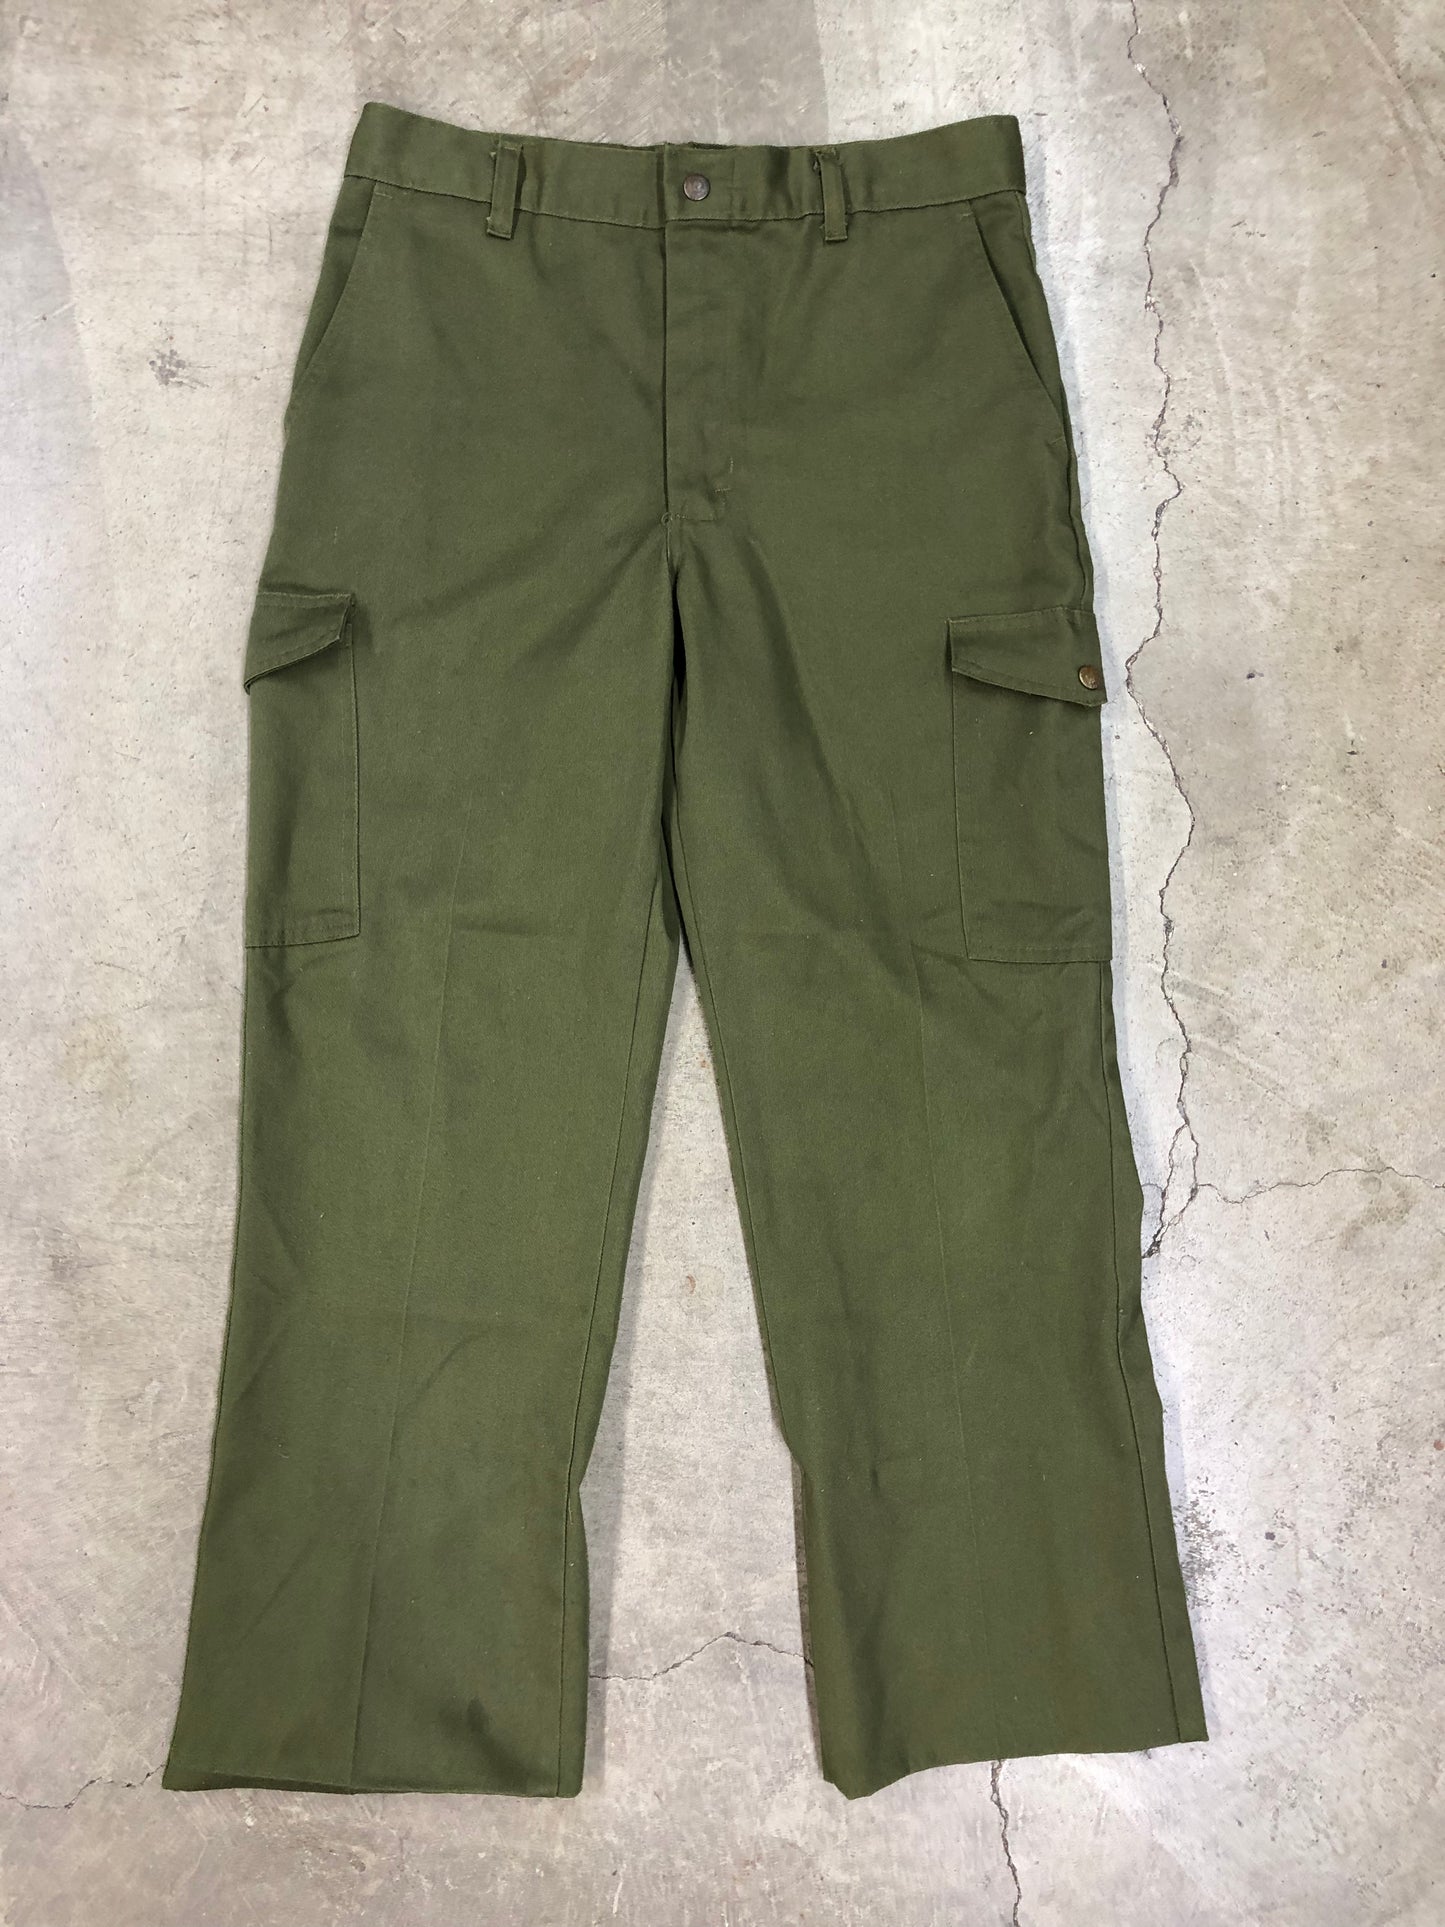 VTG Boy Scouts Of America Green Pants Sz 32x26